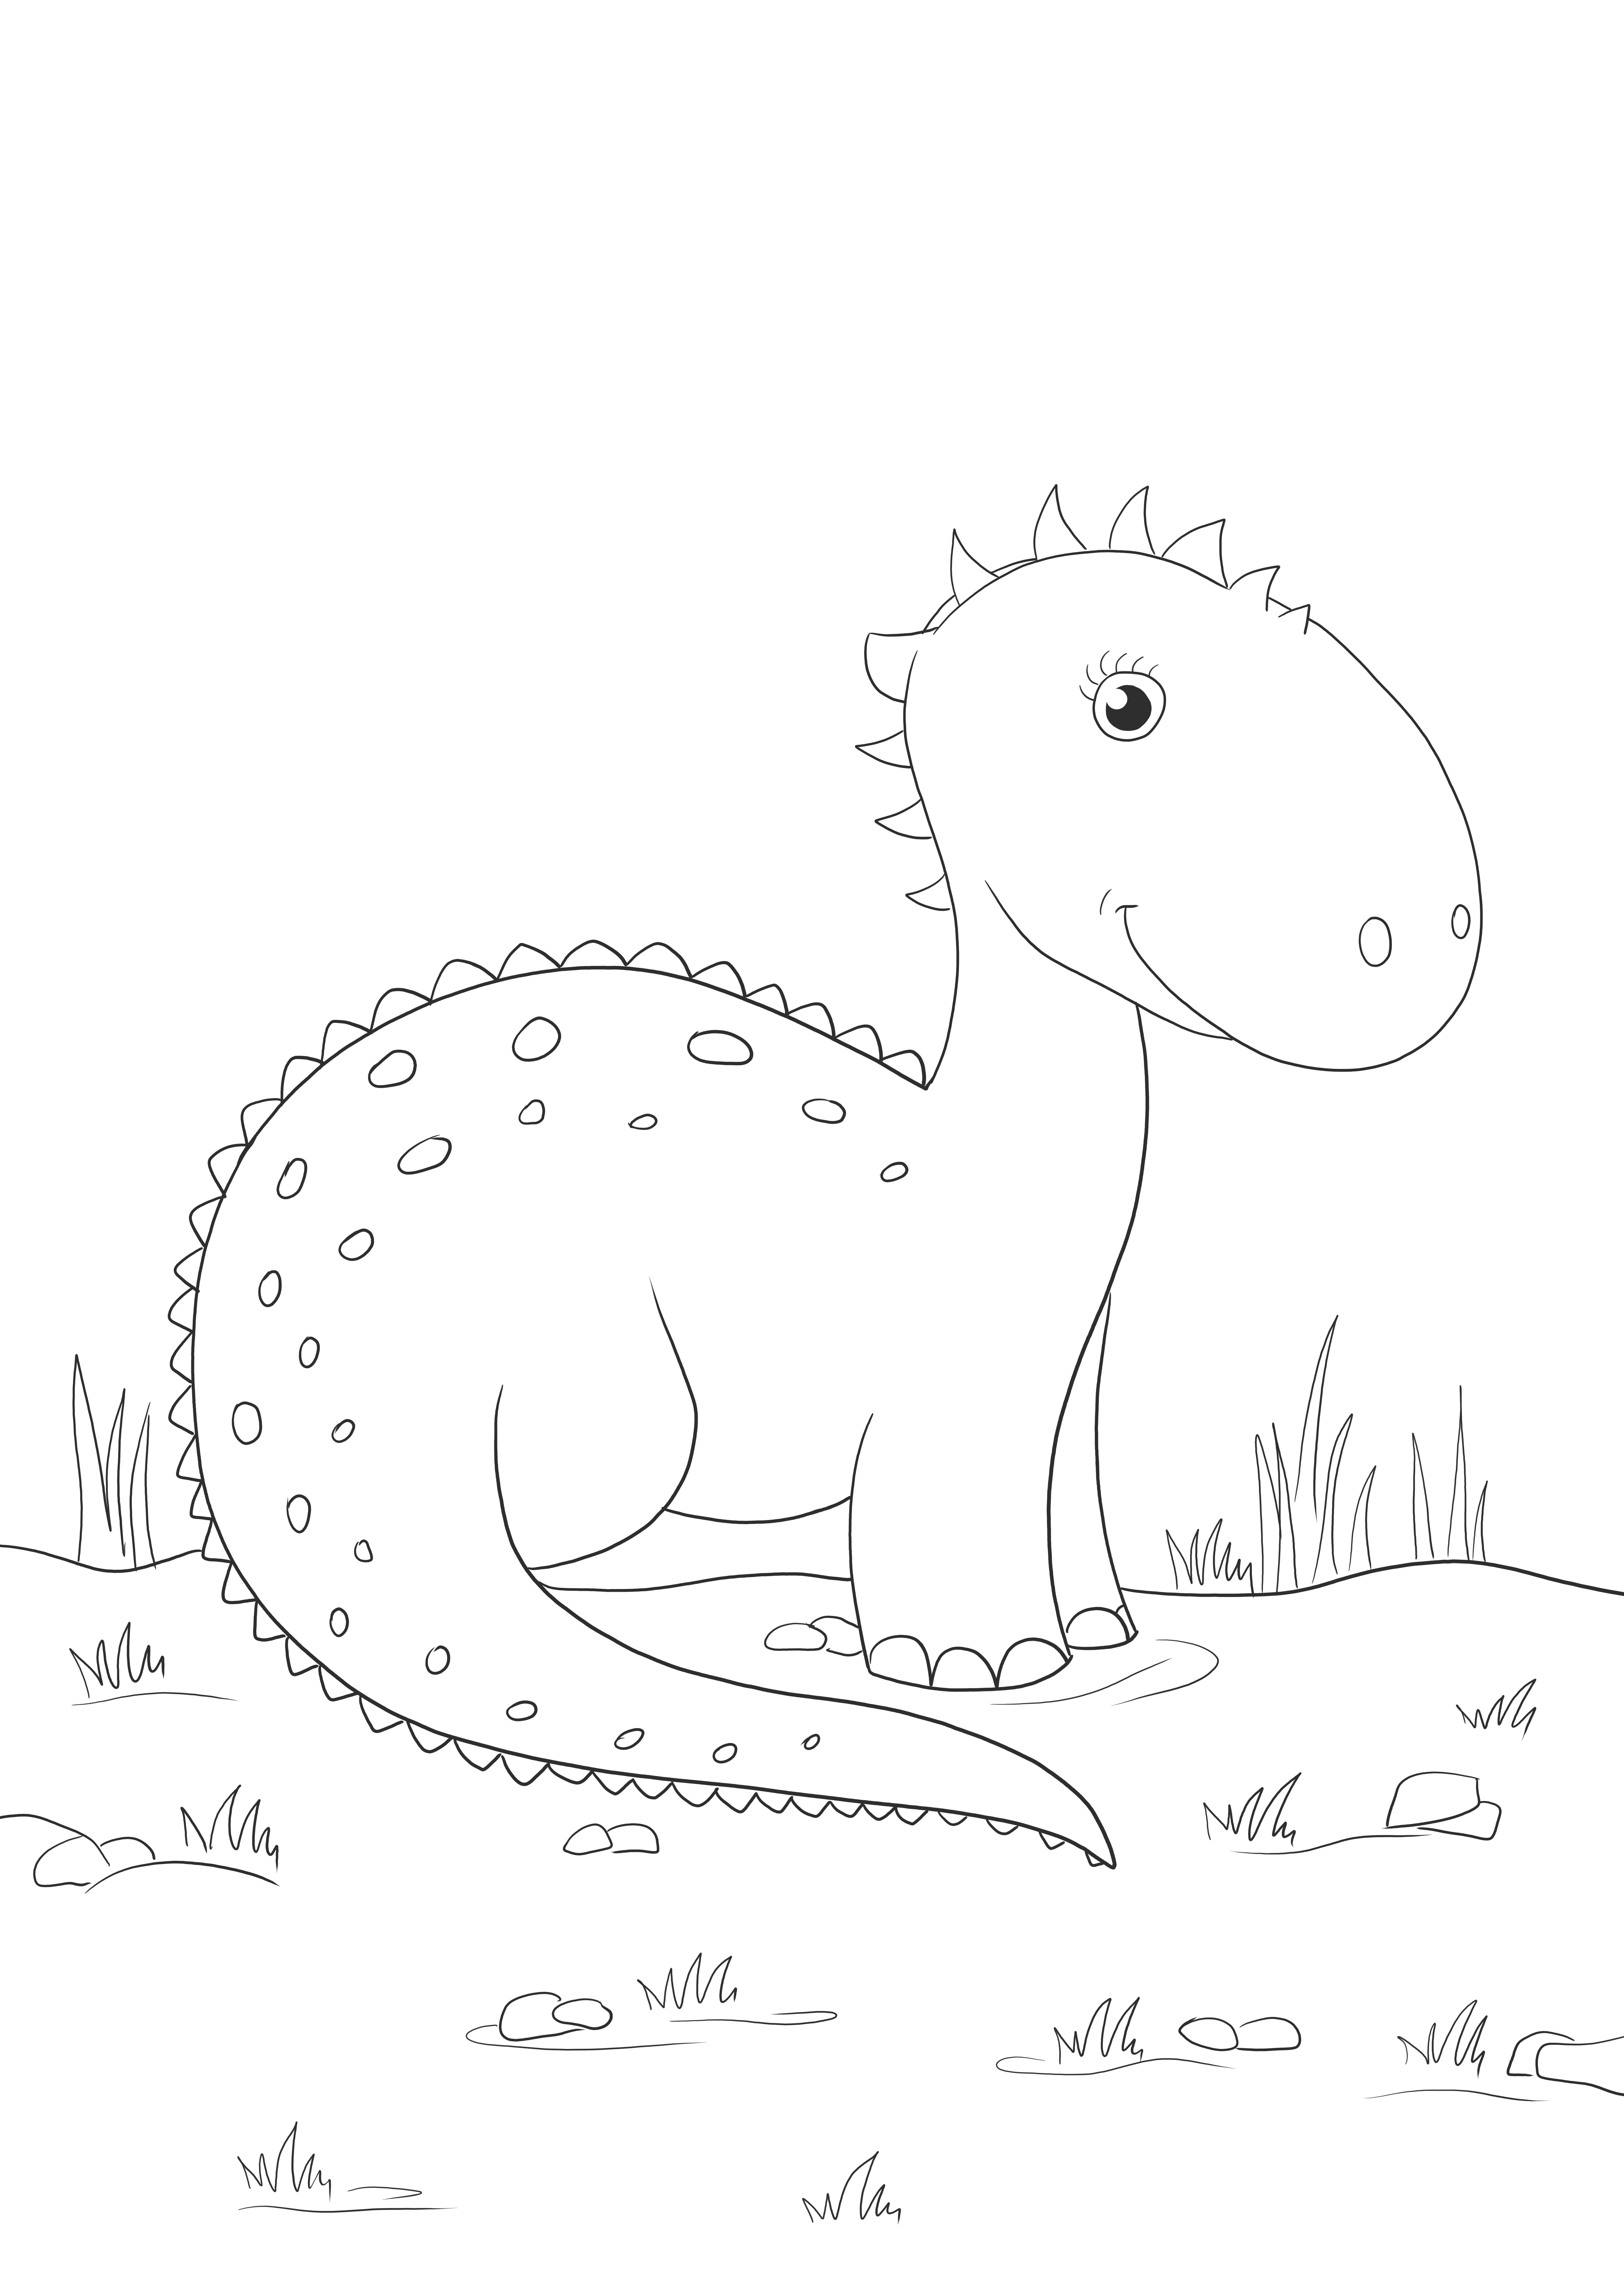 Freebie de dinosaure de dessin animé mignon à colorier pour les enfants de tous âges